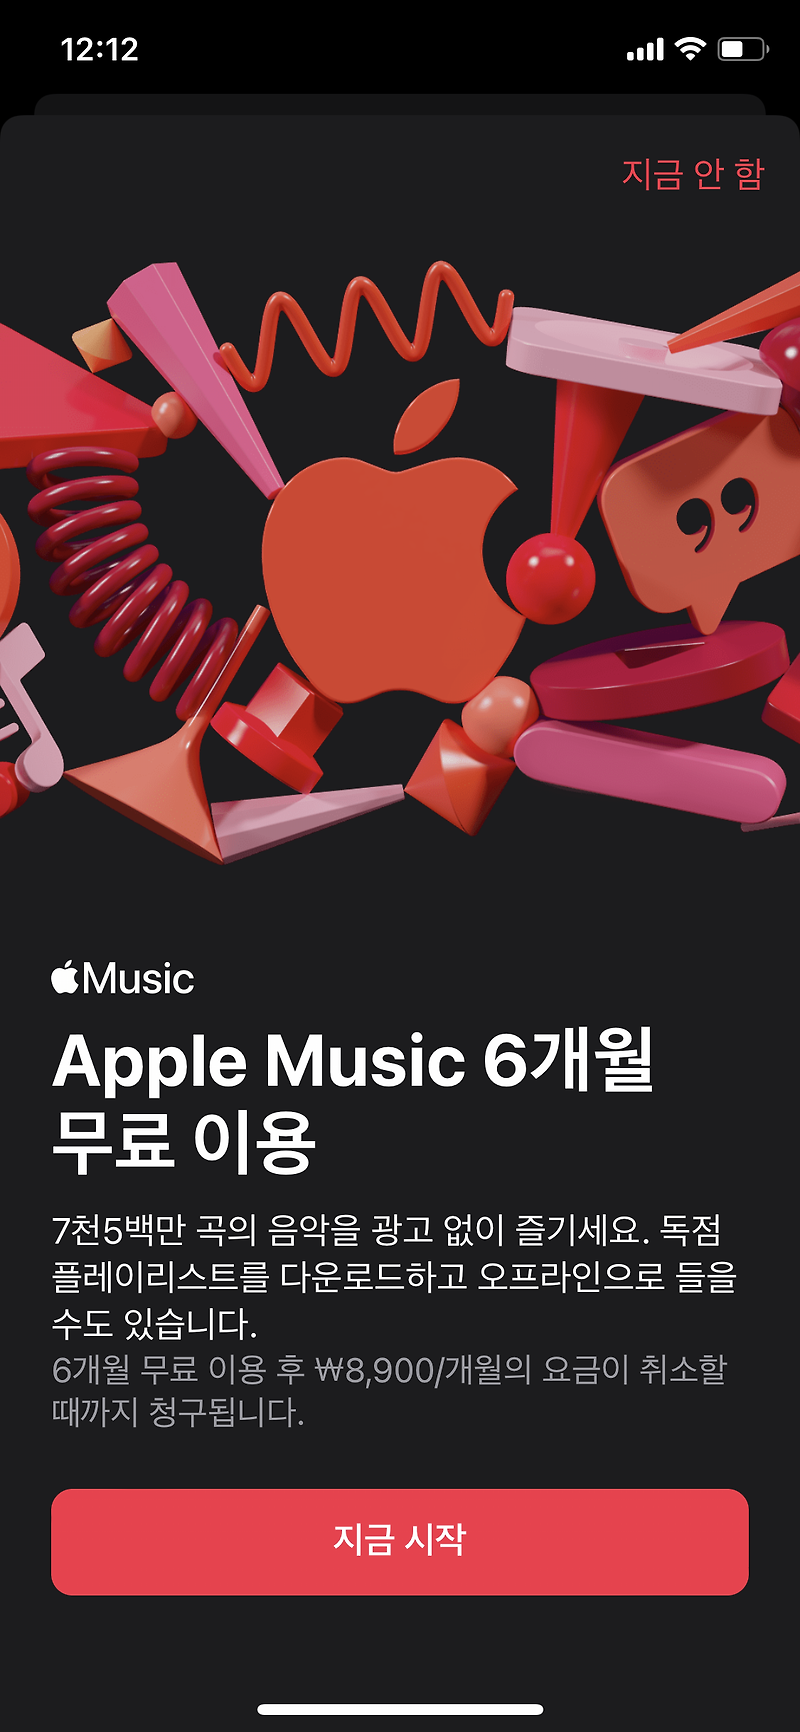 iOS15 에어팟 사용자 애플뮤직 6개월 무료이용 공간음향 체험